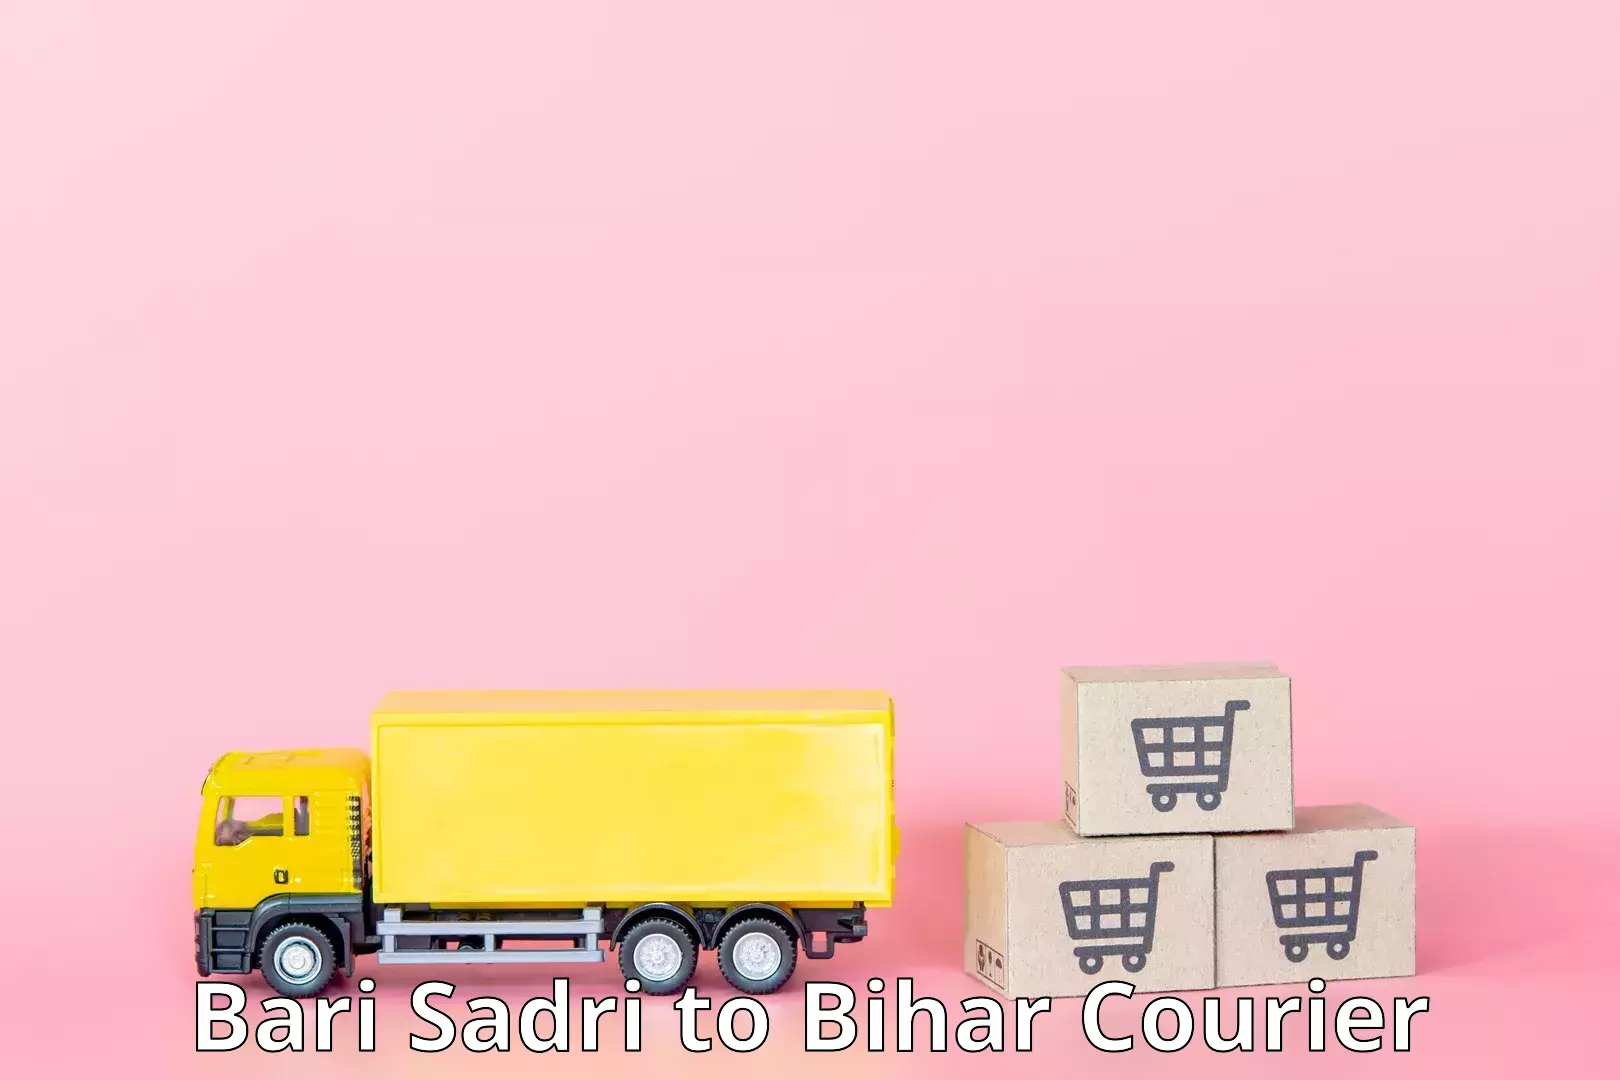 Urban courier service Bari Sadri to Arrah